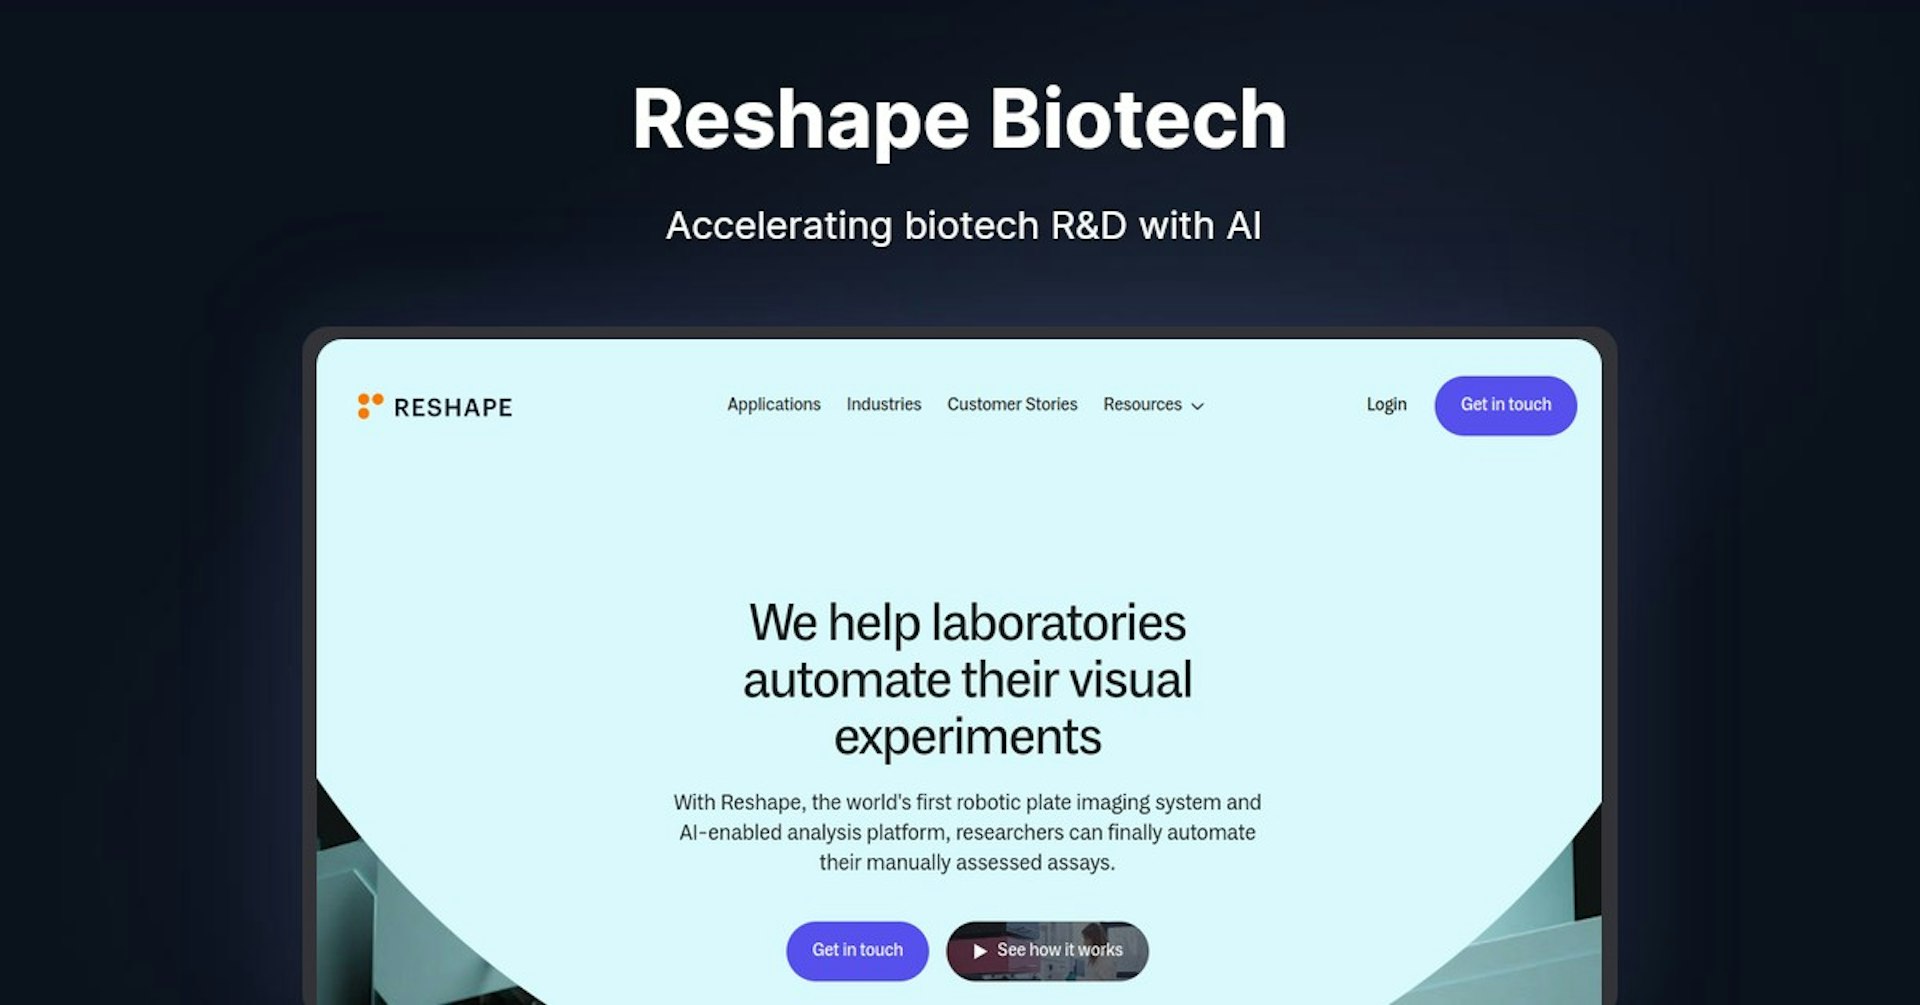 Reshape Biotech